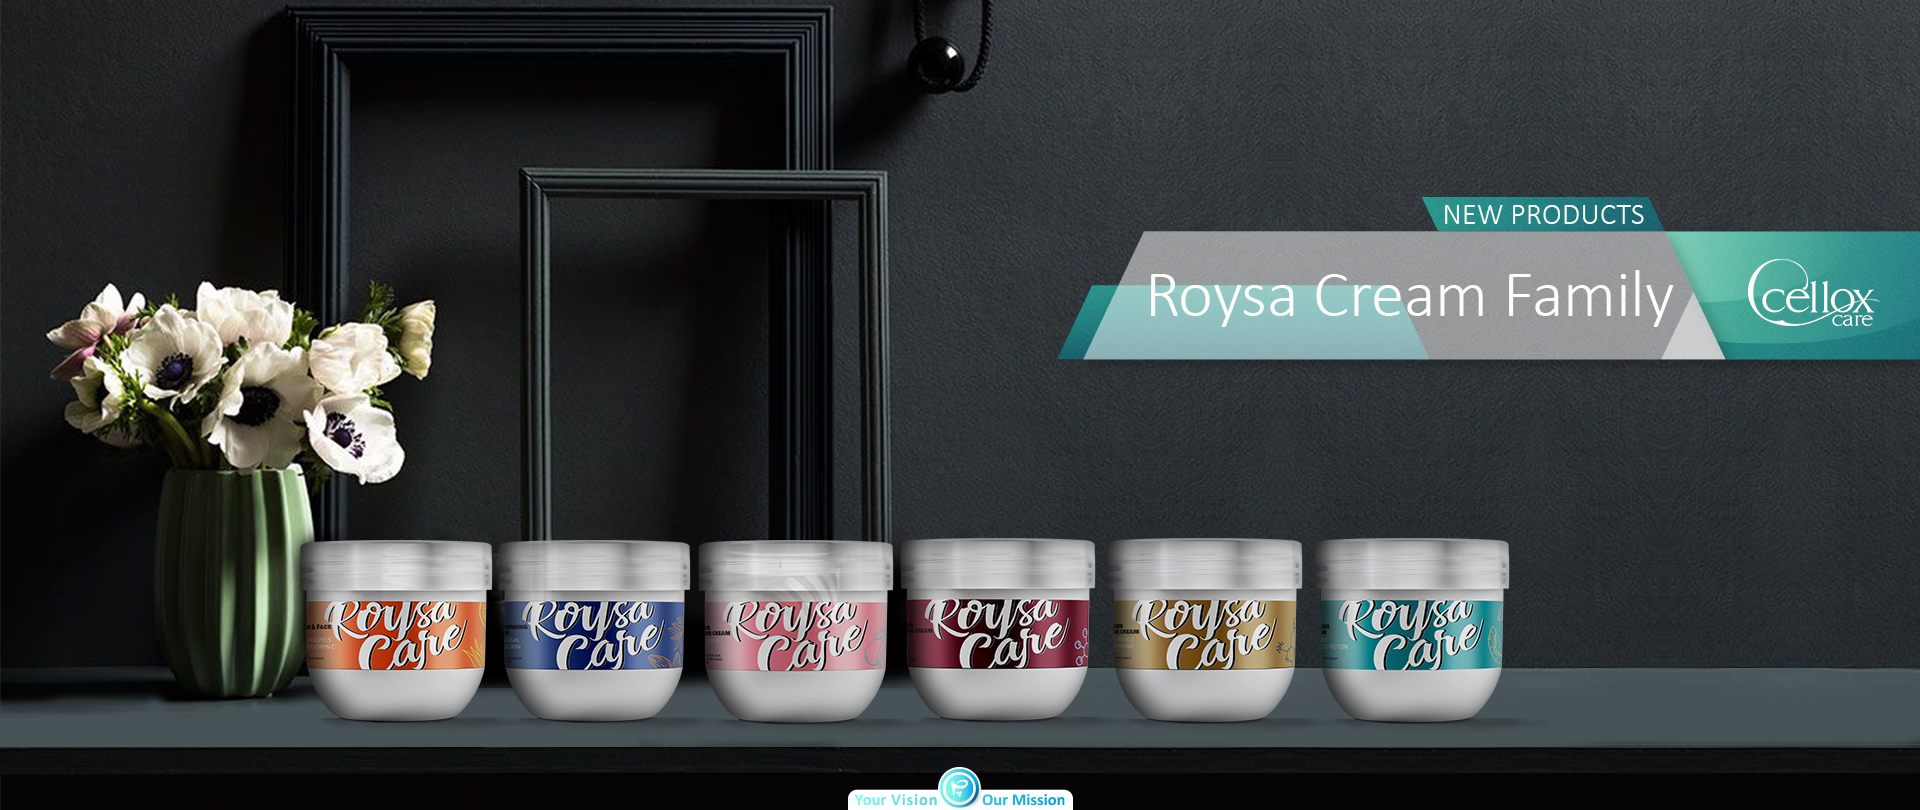 Roysa-Cream-family6